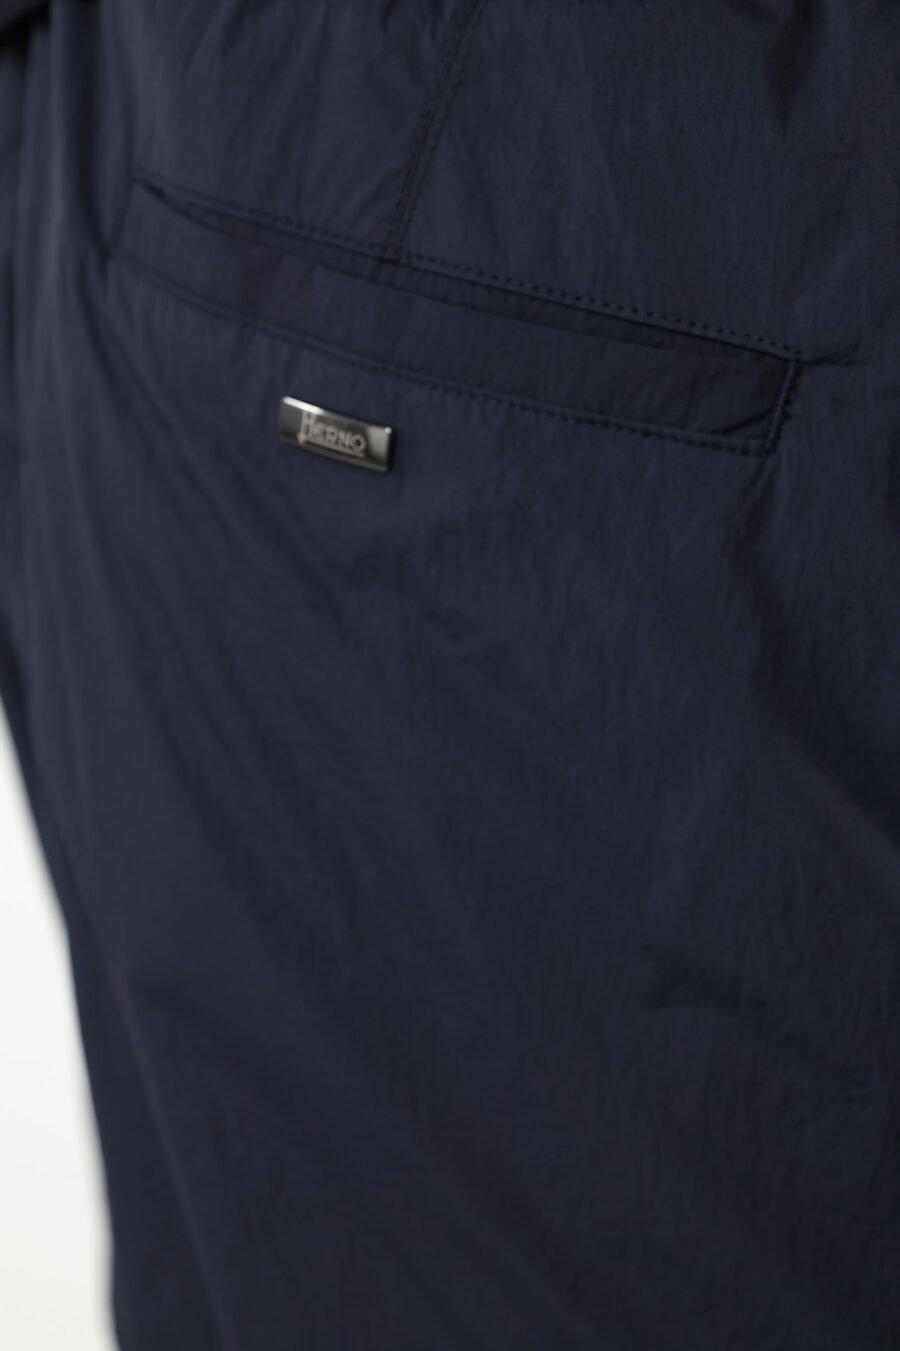 Pantalón azul con logotipo - 111492